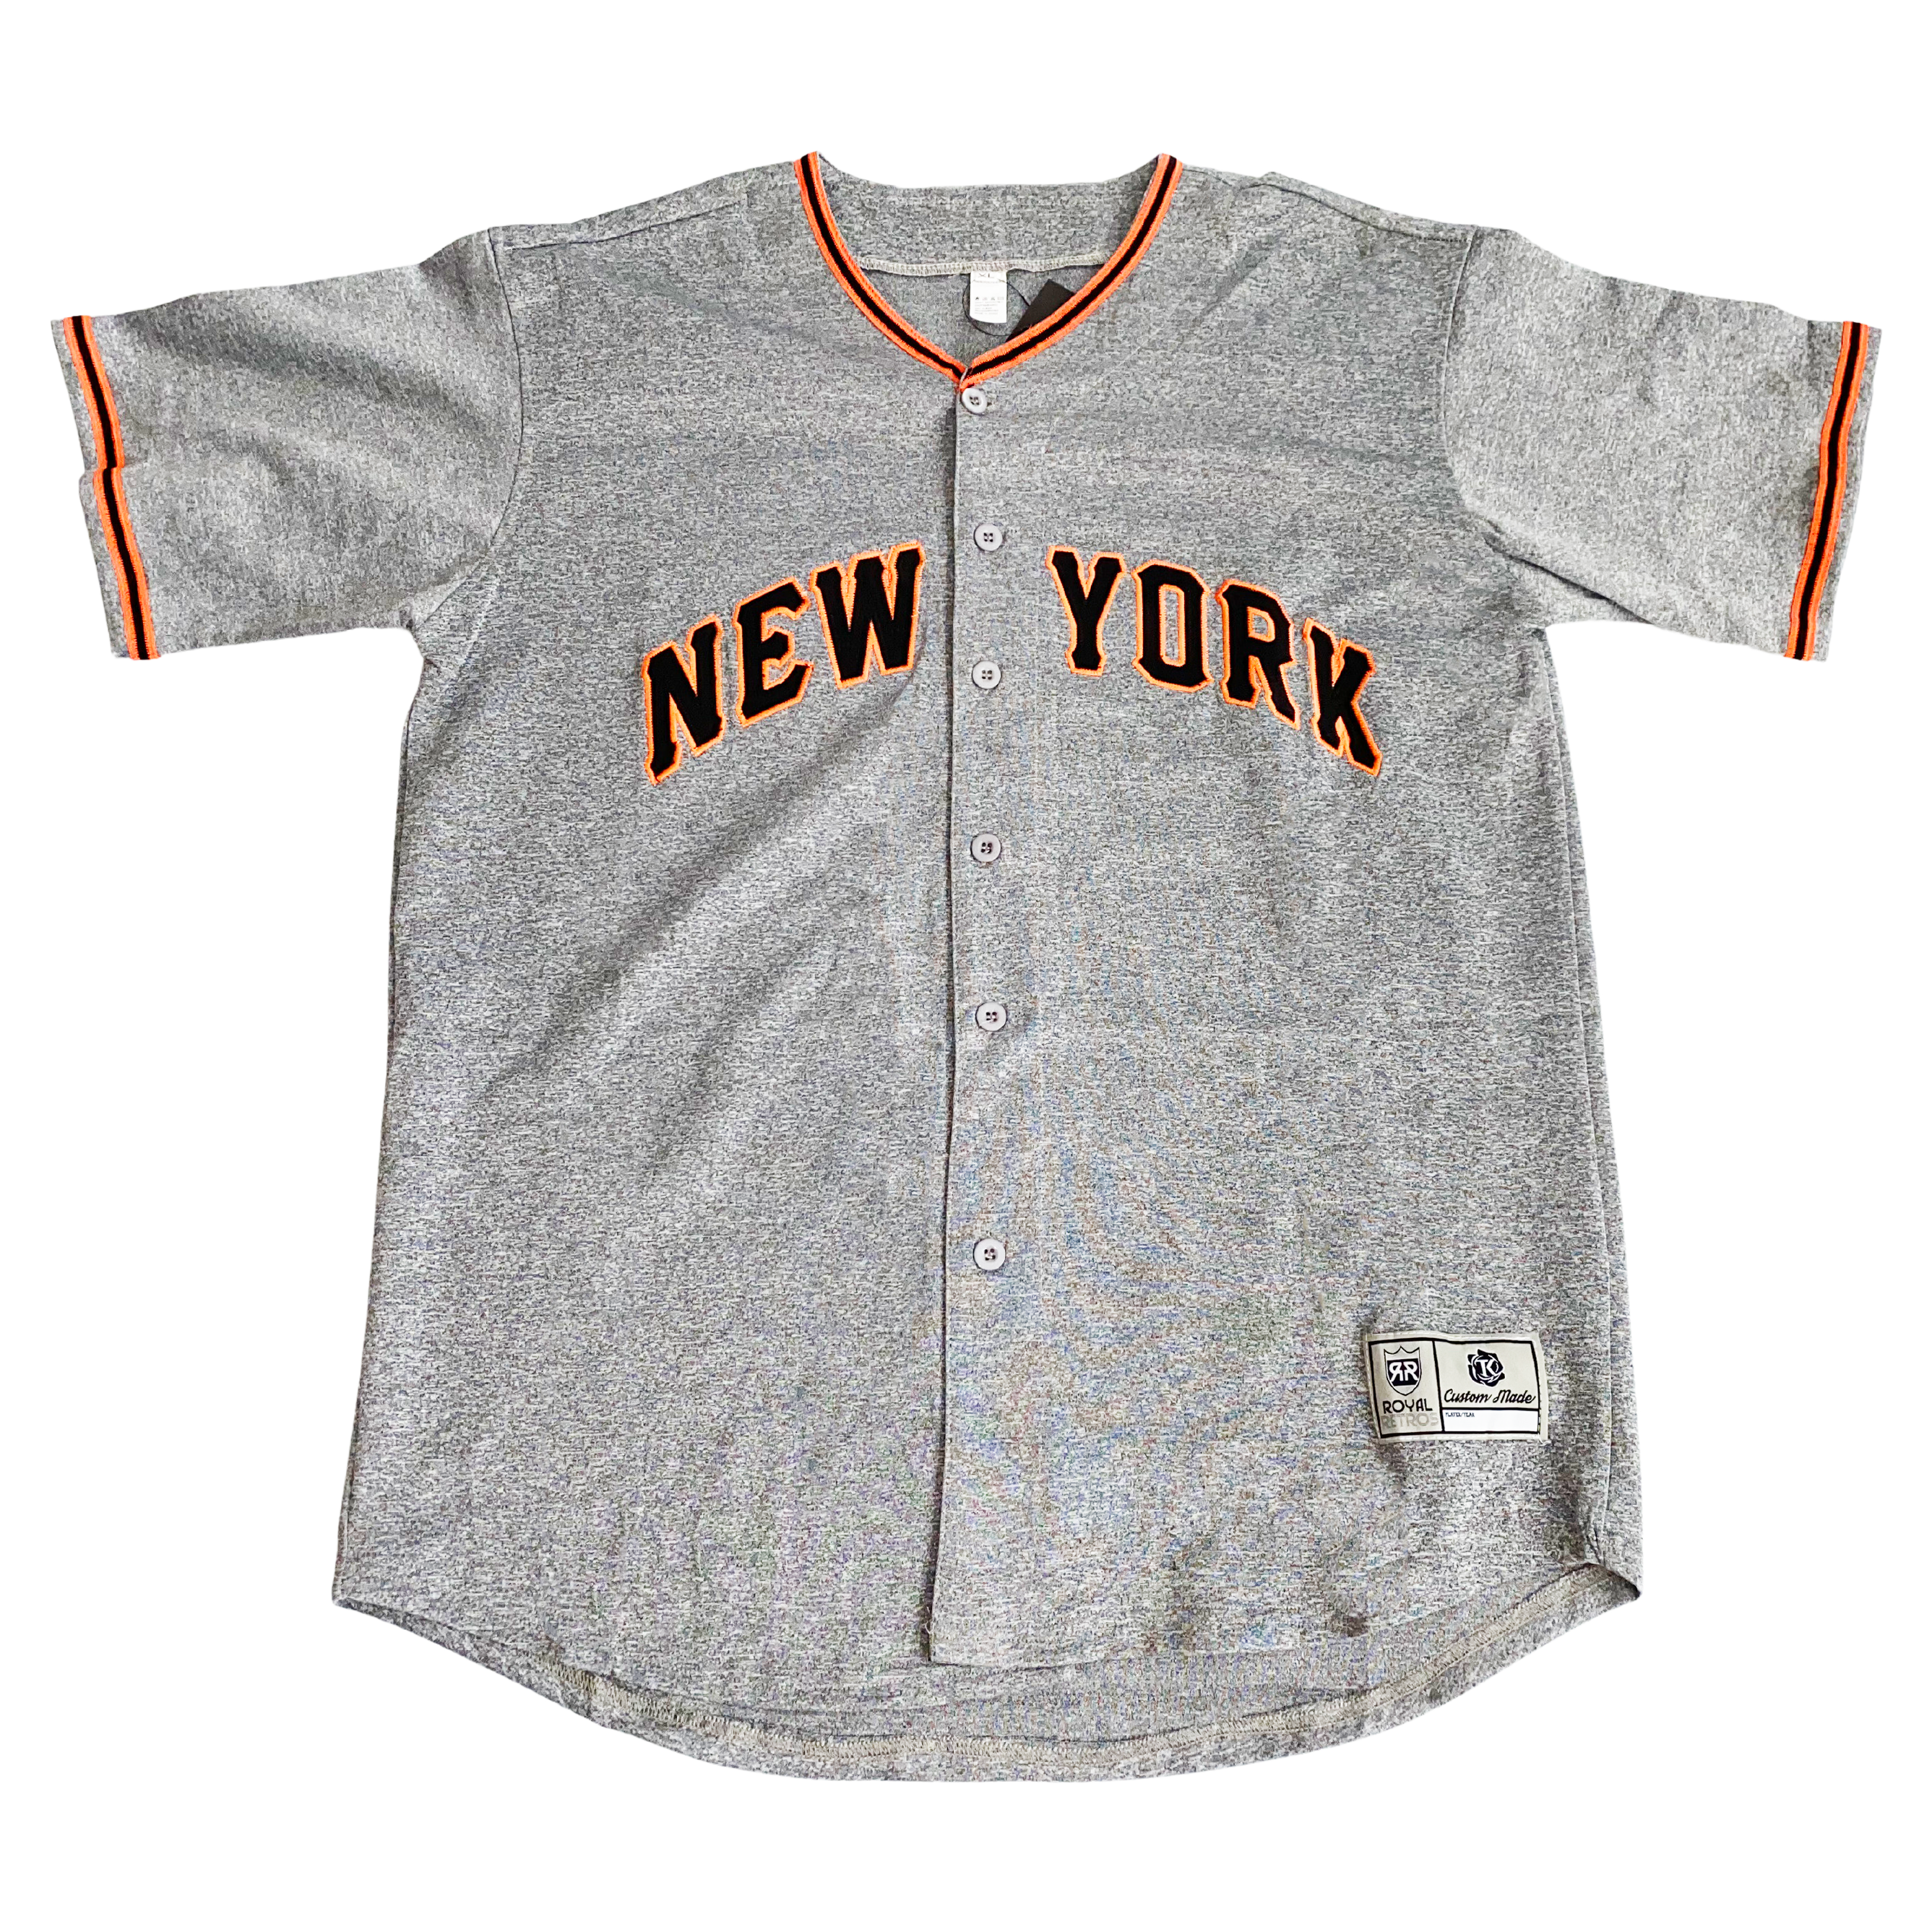 Custom New York Yankees Jerseys, Customized Yankees Shirts, Hoodies,  Merchandise